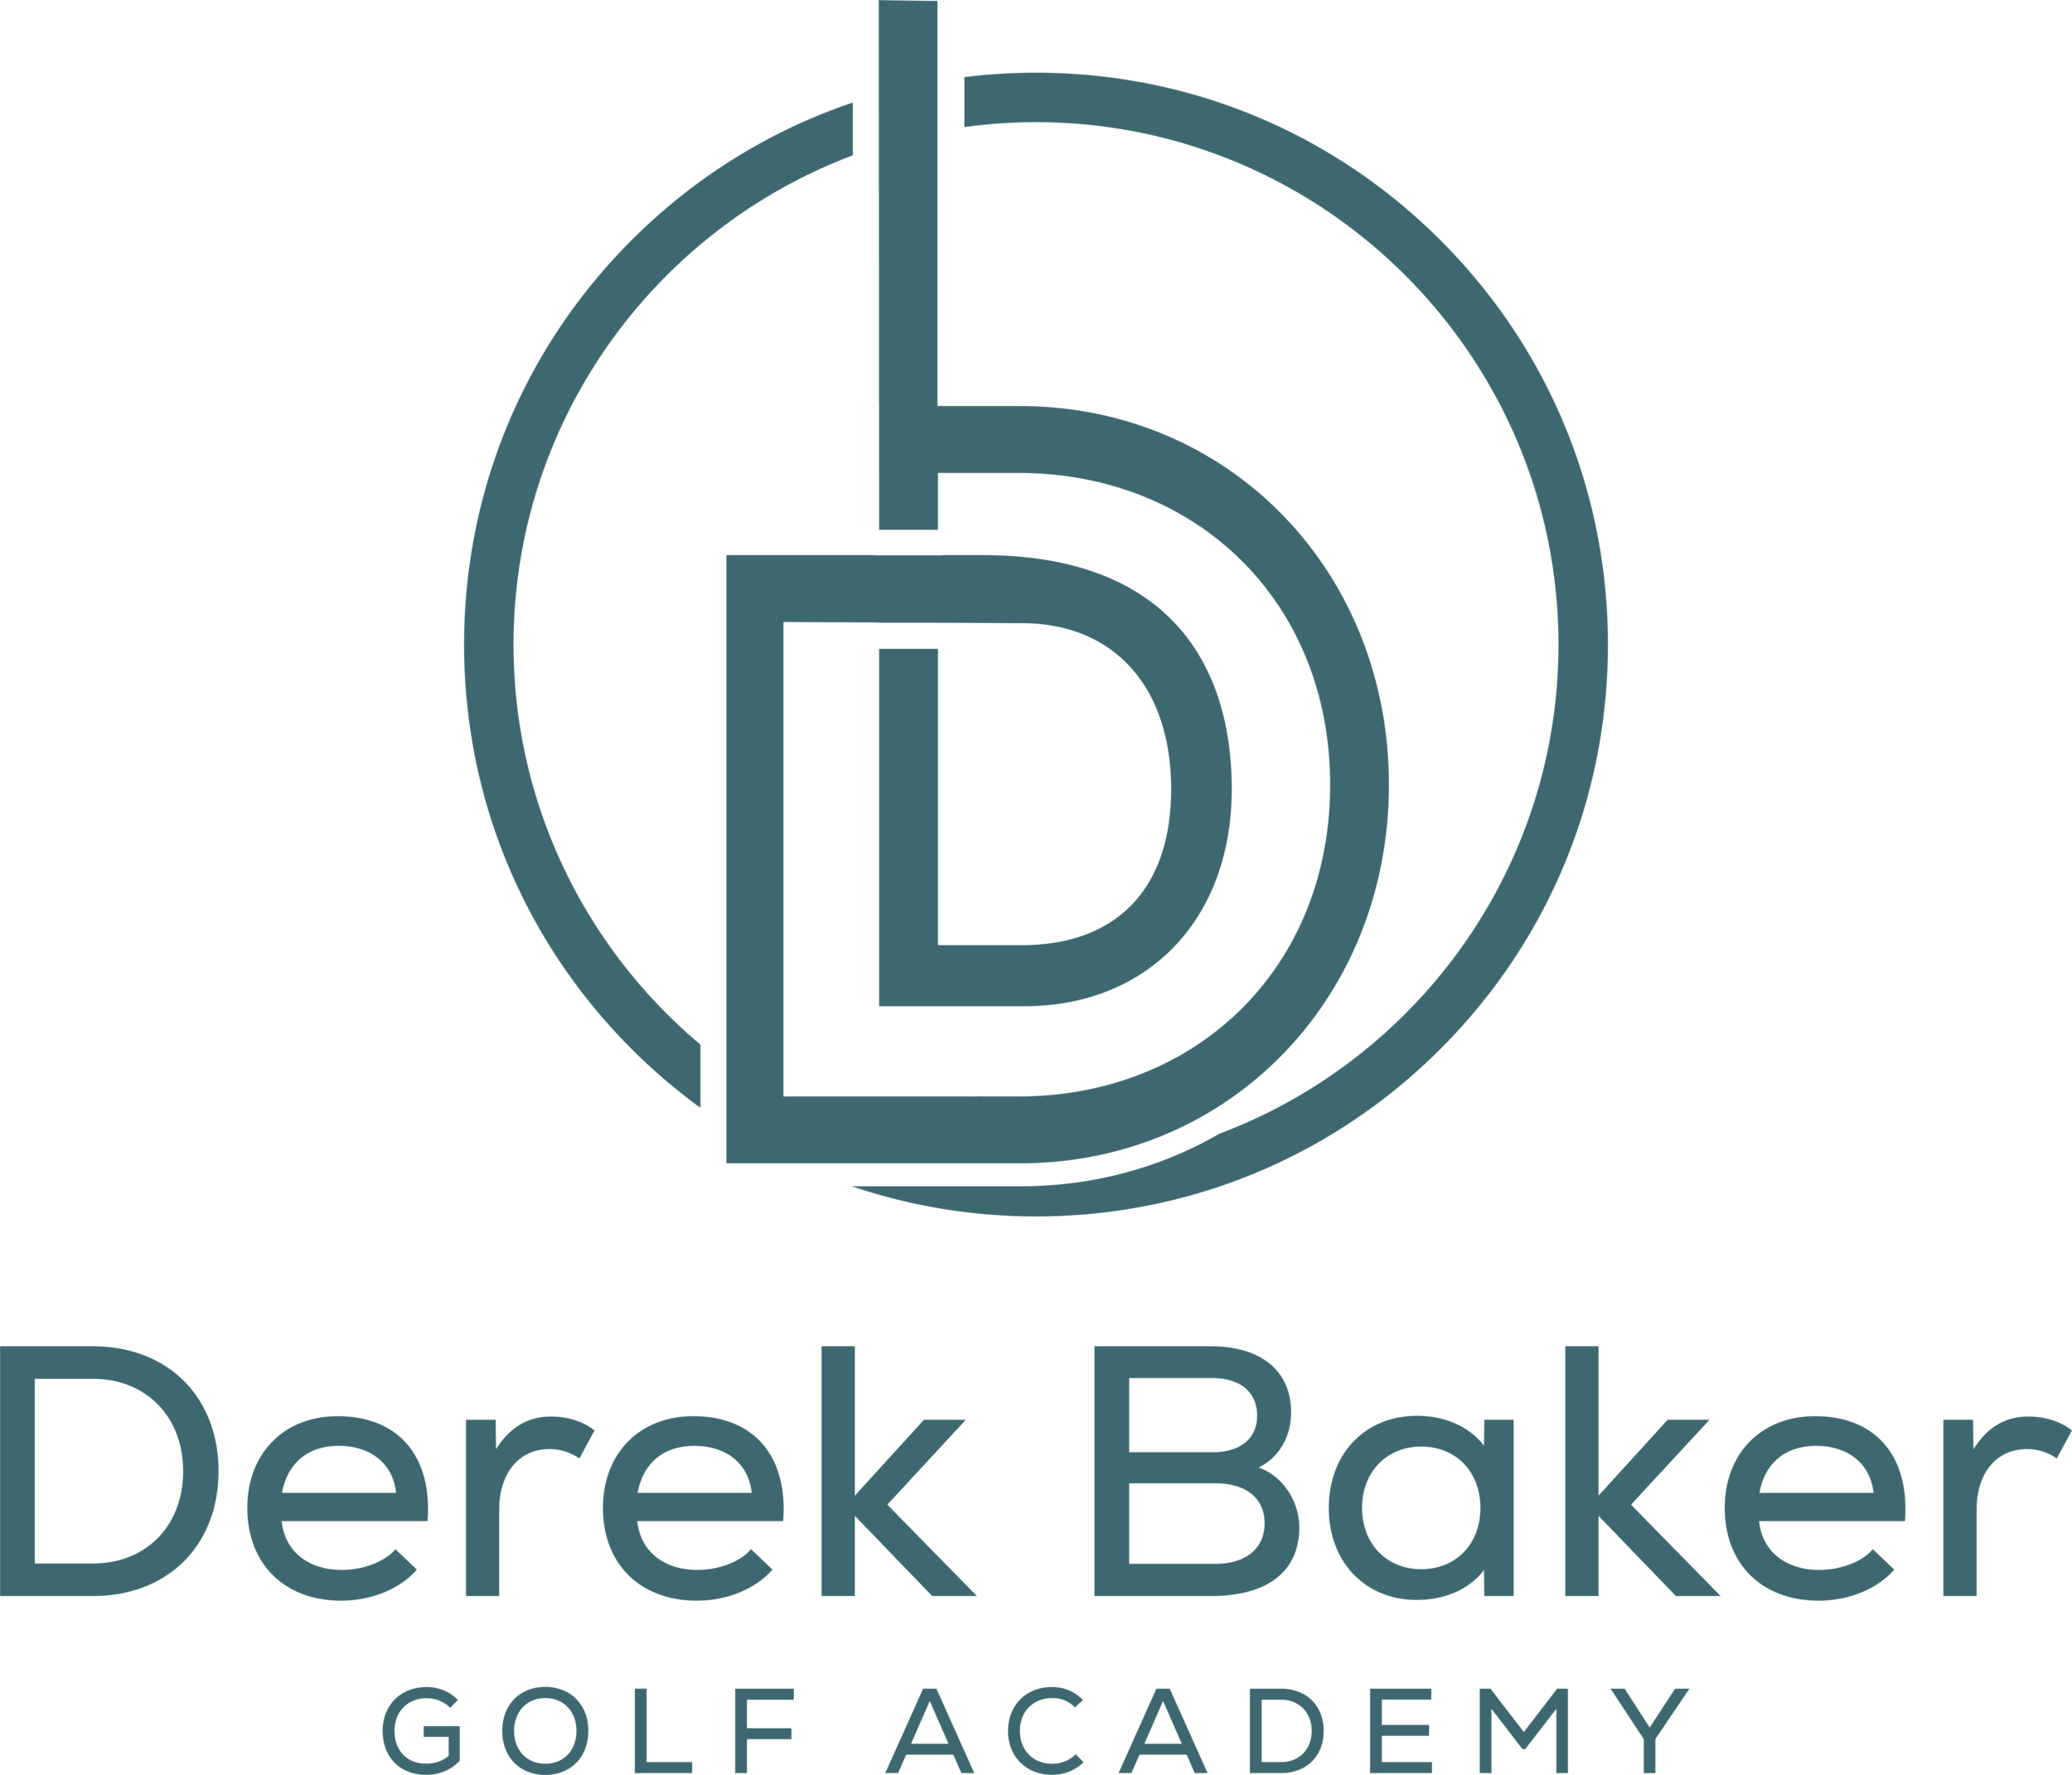 Derek Baker Golf Academy